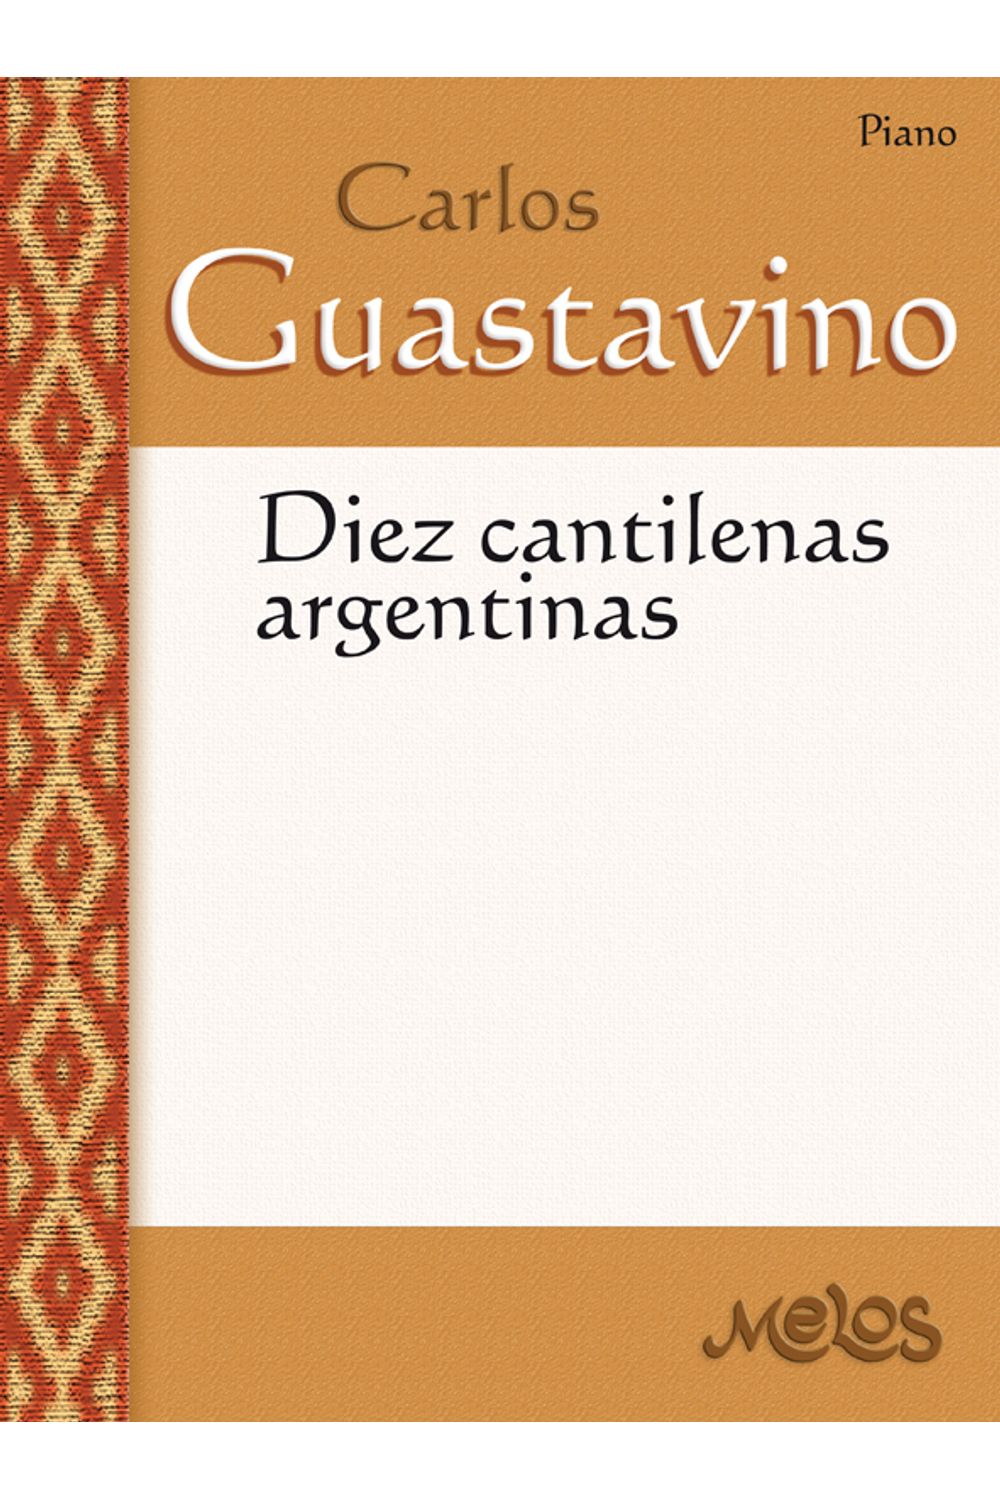 bm-ba11684-10-cantilenas-argentinas-melos-ediciones-musicales-9790698820738